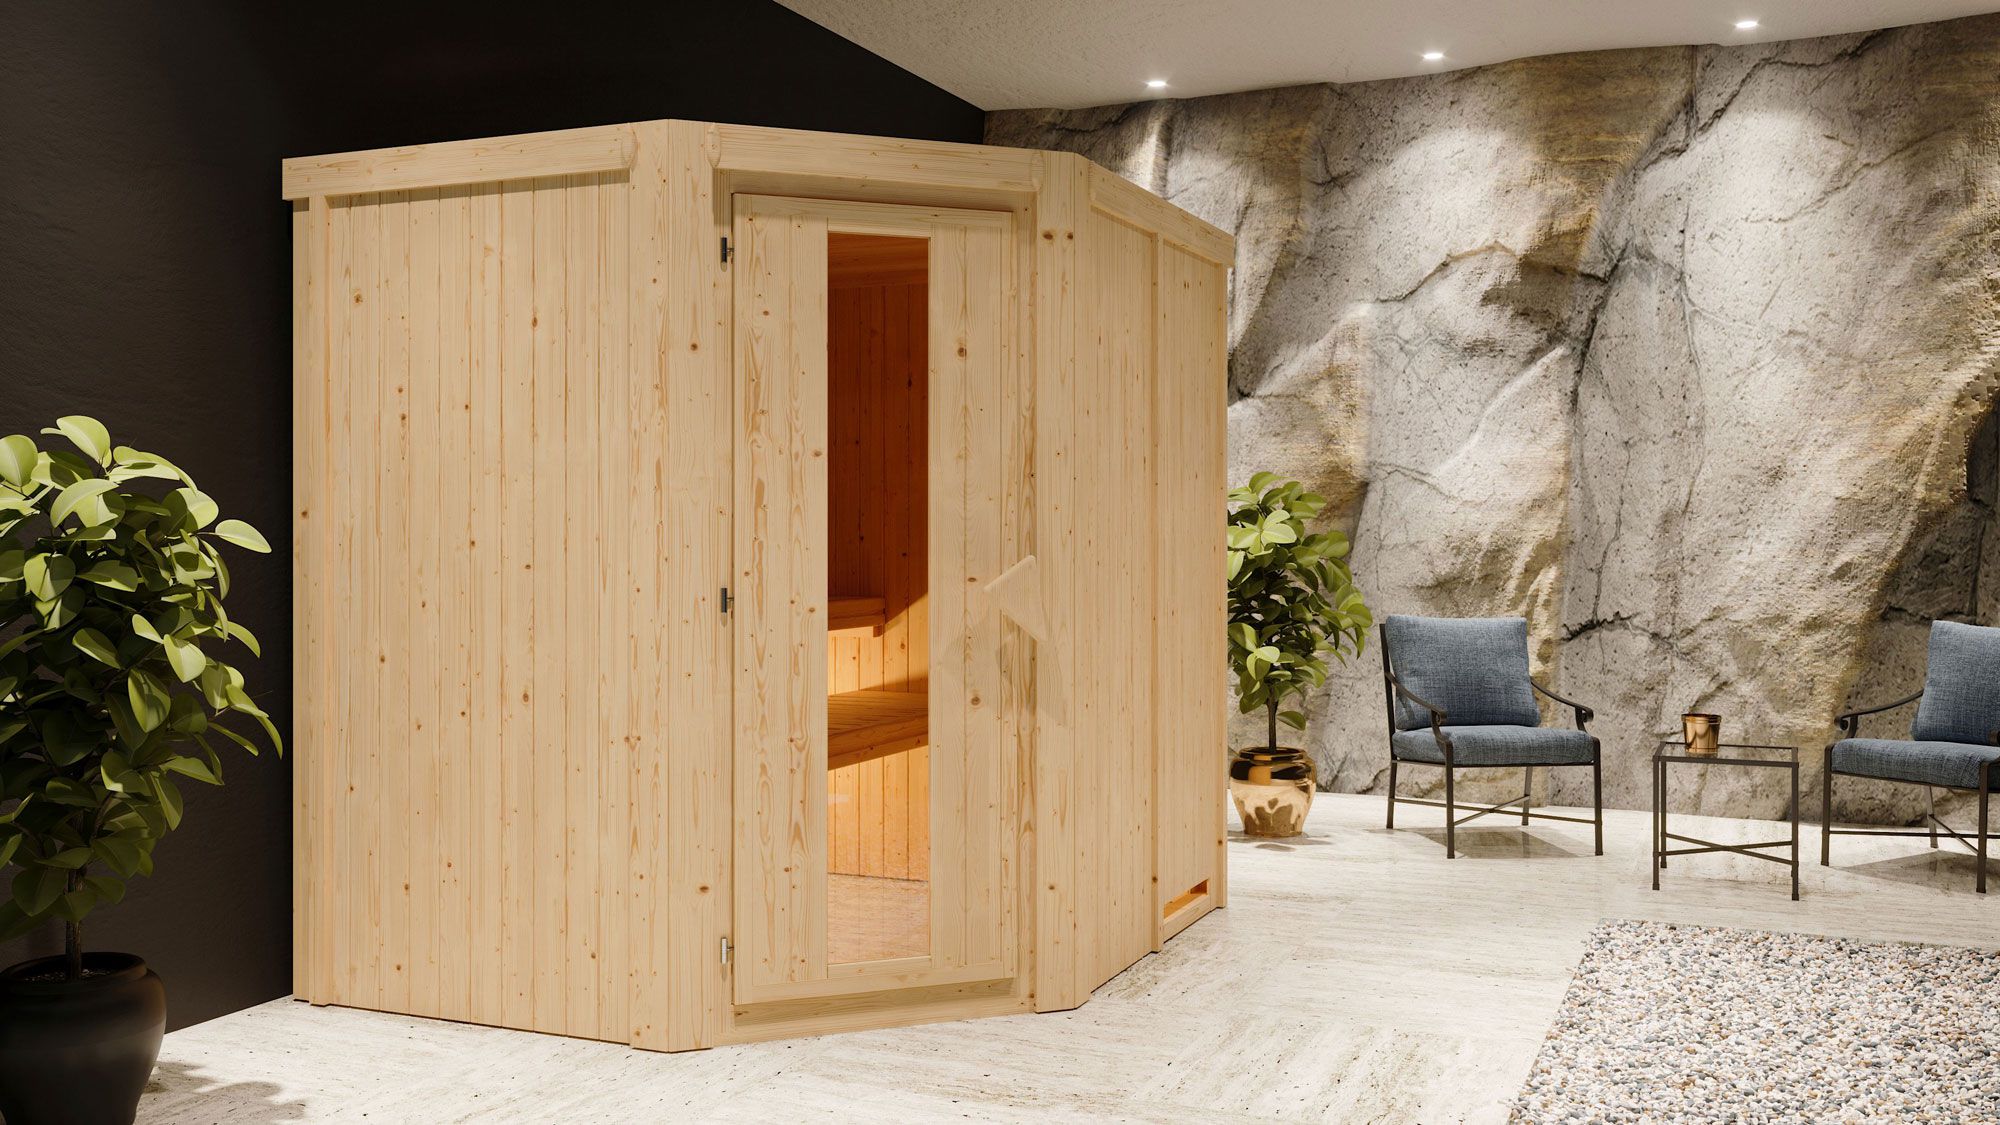 Sauna "Hanko" SET met energiebesparende deur - kleur: natuur, kachel externe regeling eenvoudig 9 kW - 196 x 170 x 198 cm (B x D x H)